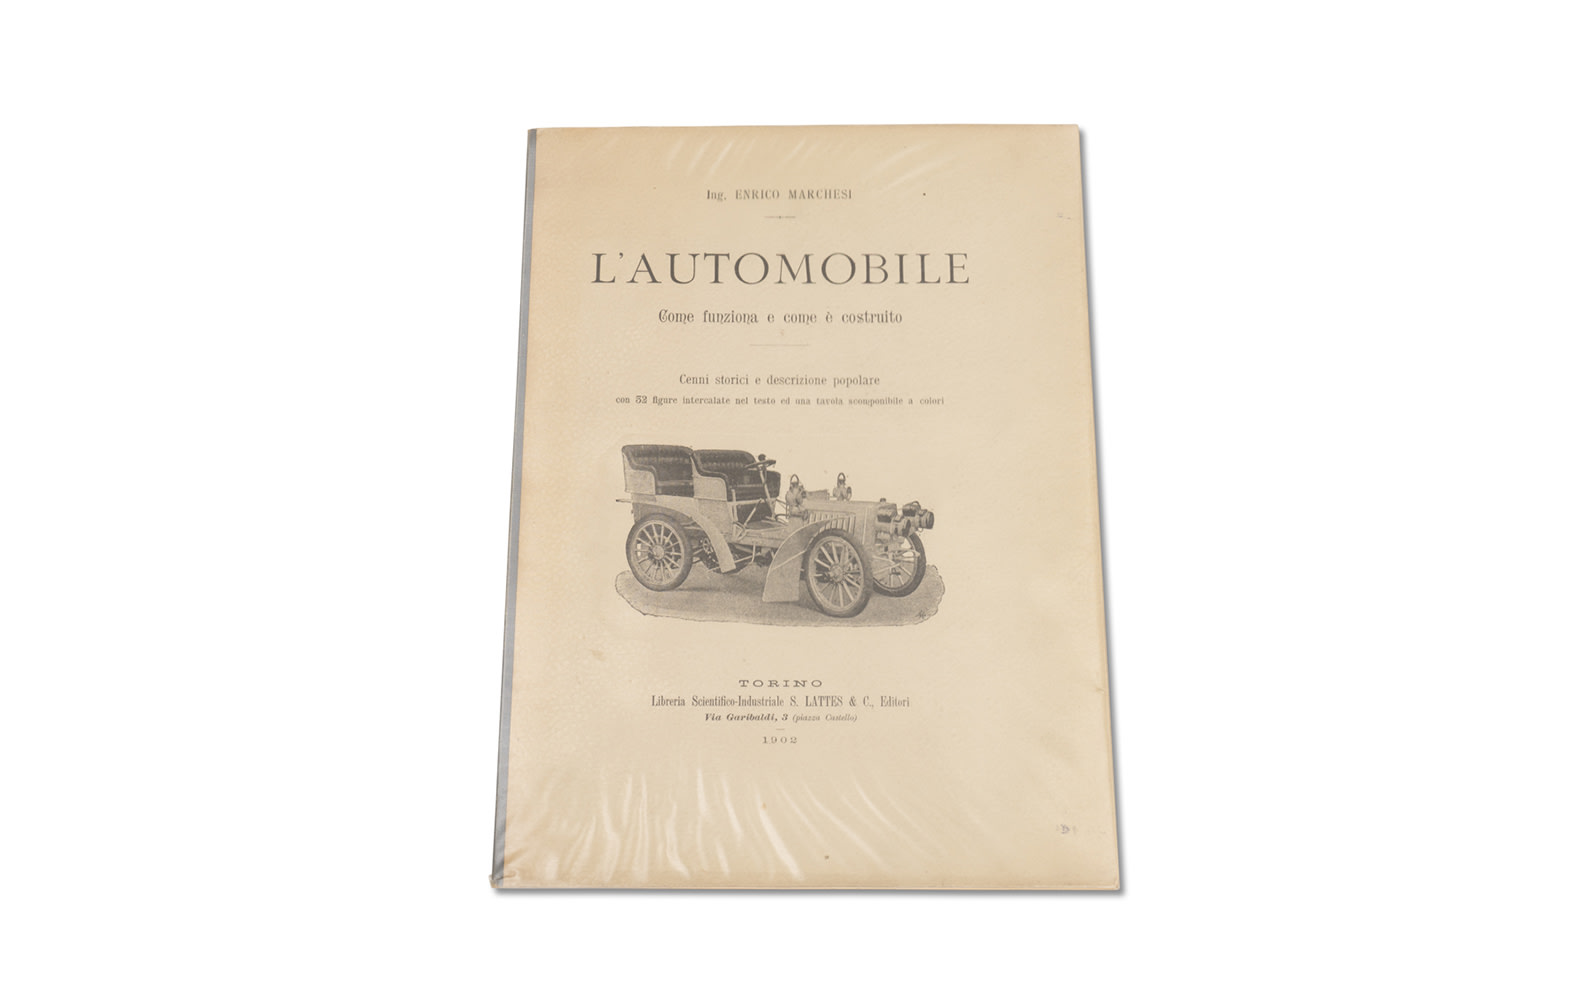 L'Automobile: Come Funziona e Come è Costruito by Ing. Enrico Marchesi, 1902